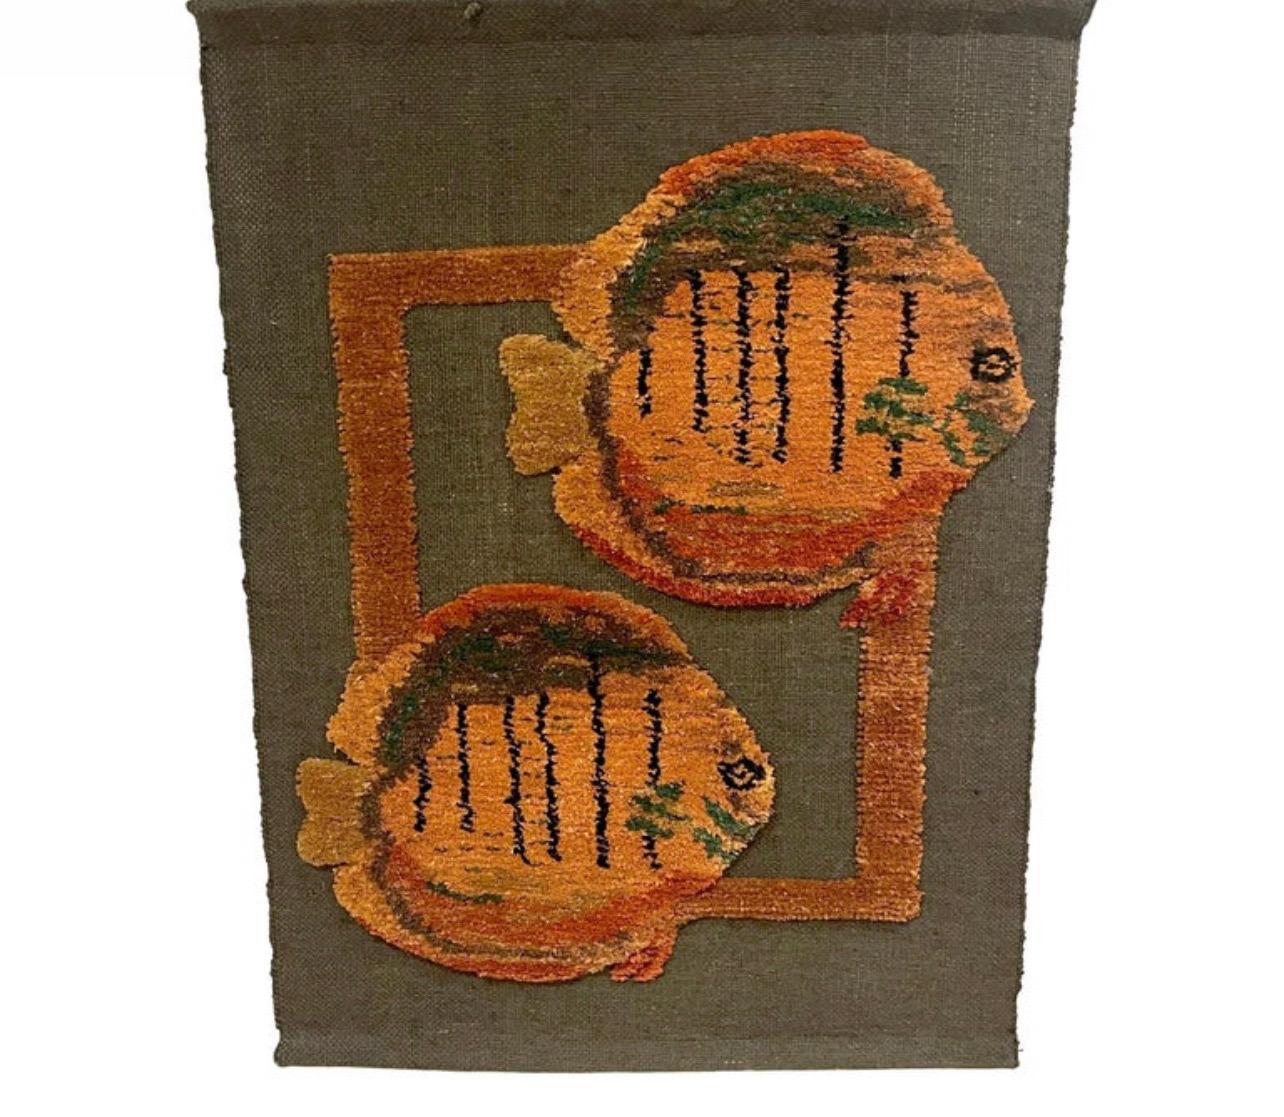 Tapisserie tissée à motif de poissons du milieu du siècle dernier de Tom Taylor, 1990
ÉTATS-UNIS, 1990
Cette tapisserie tissée du milieu du siècle par Tom Taylor, créée en 1990, est une superbe pièce d'art textile de la fin du XXe siècle. Il